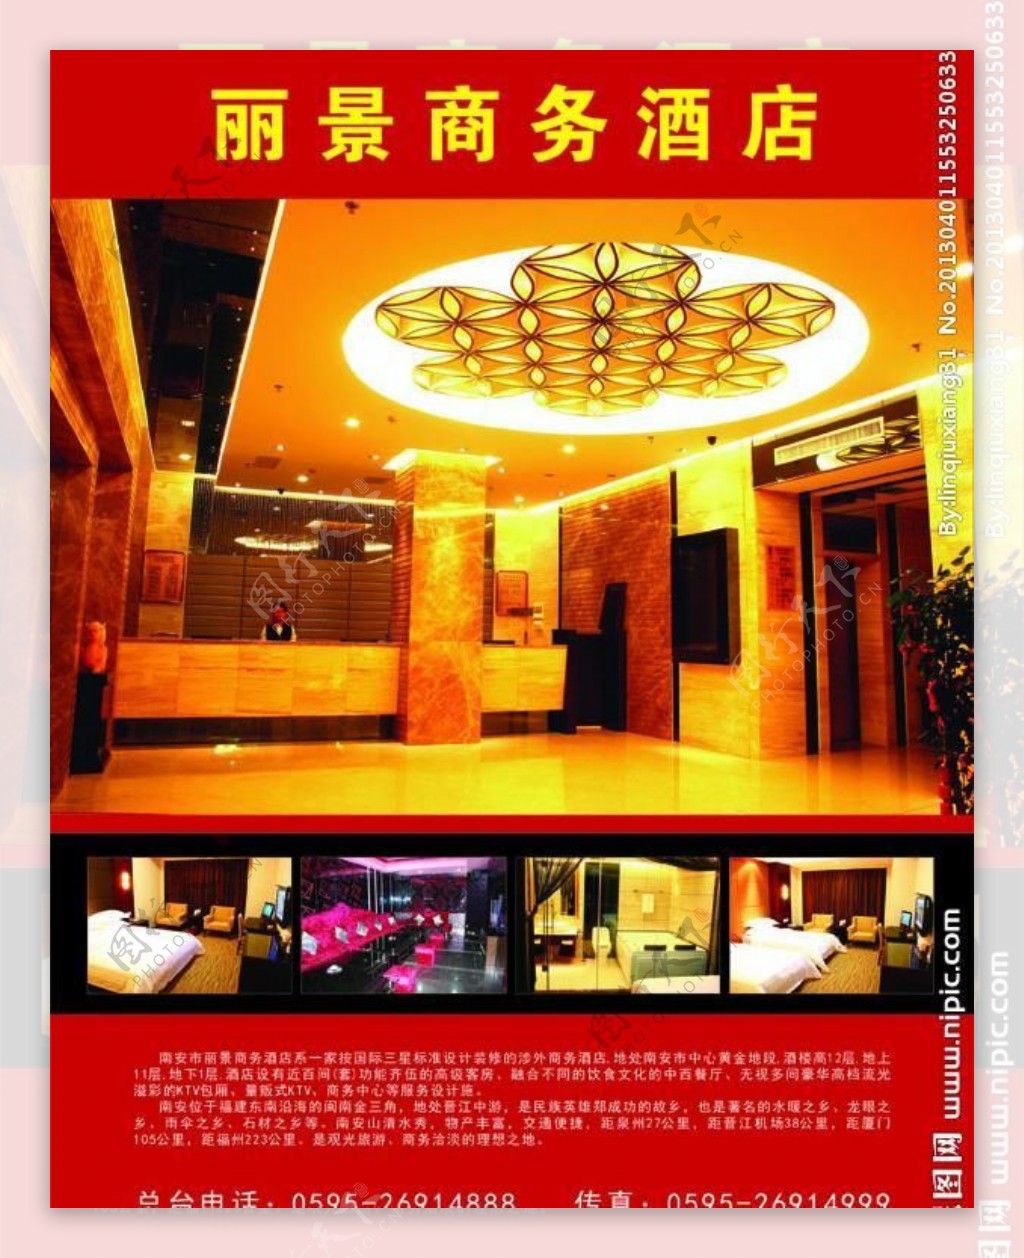 南安丽景商务酒店广告图片